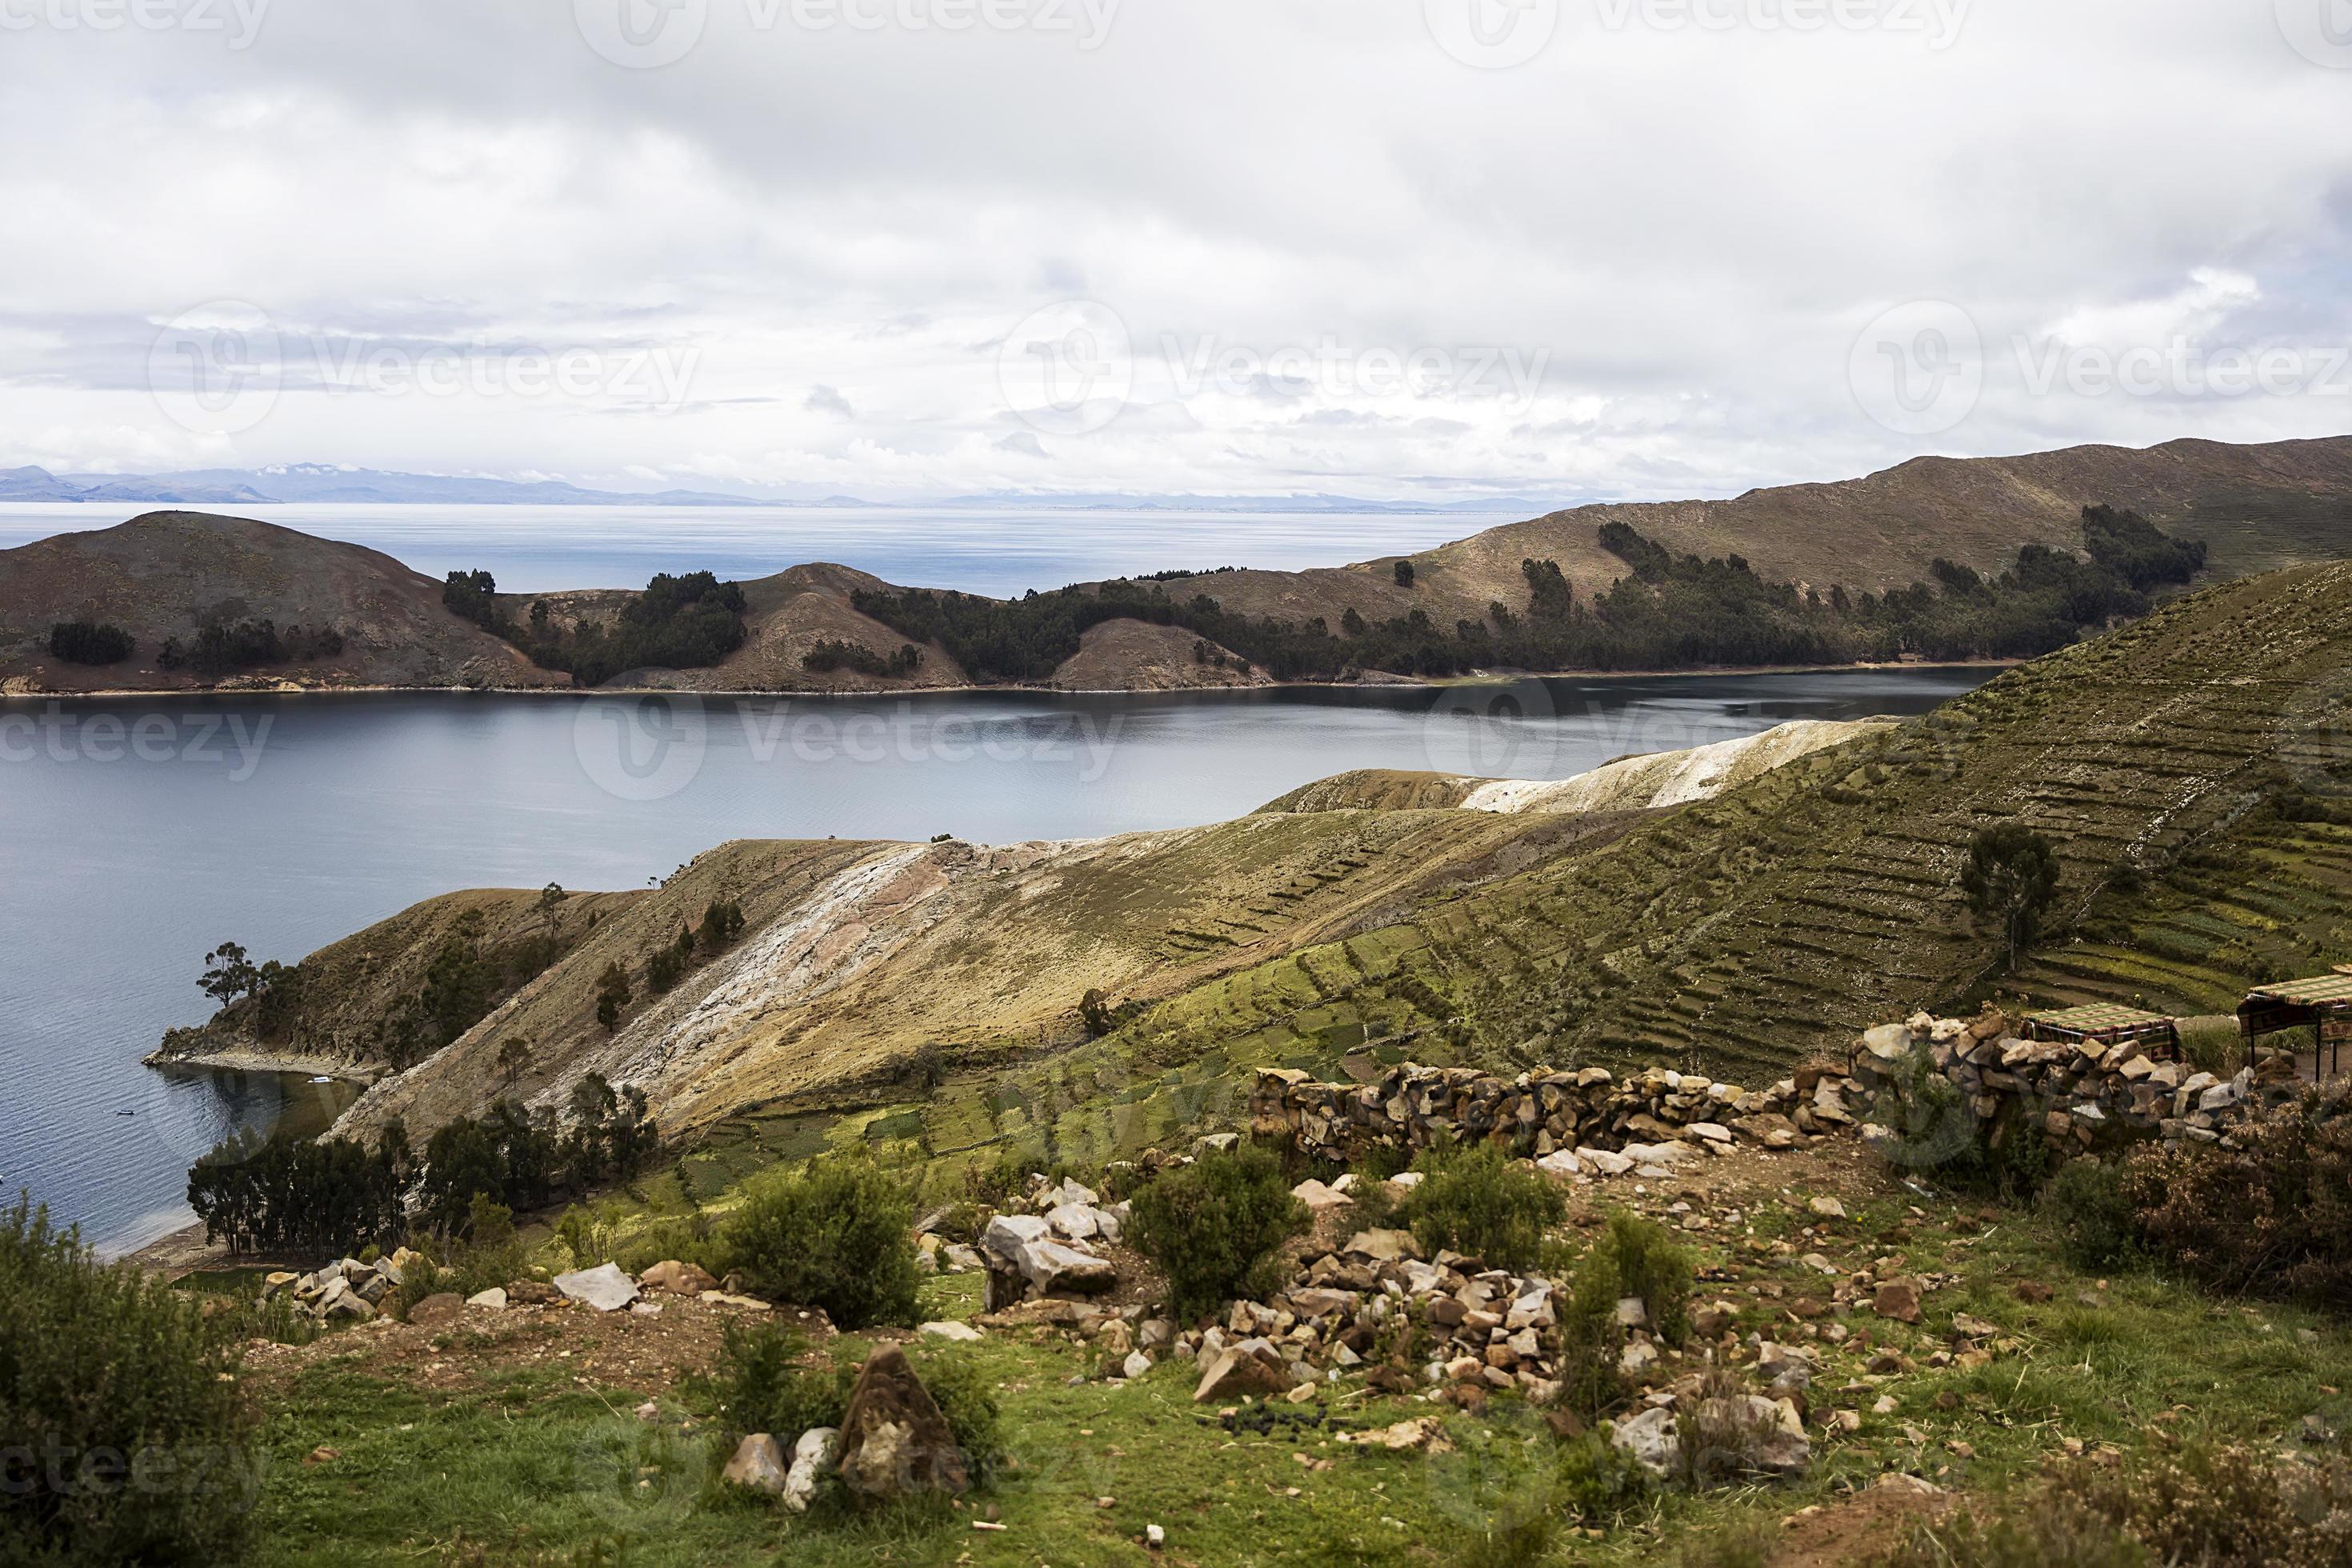 isla del sol en el lago titicaca en bolivia foto